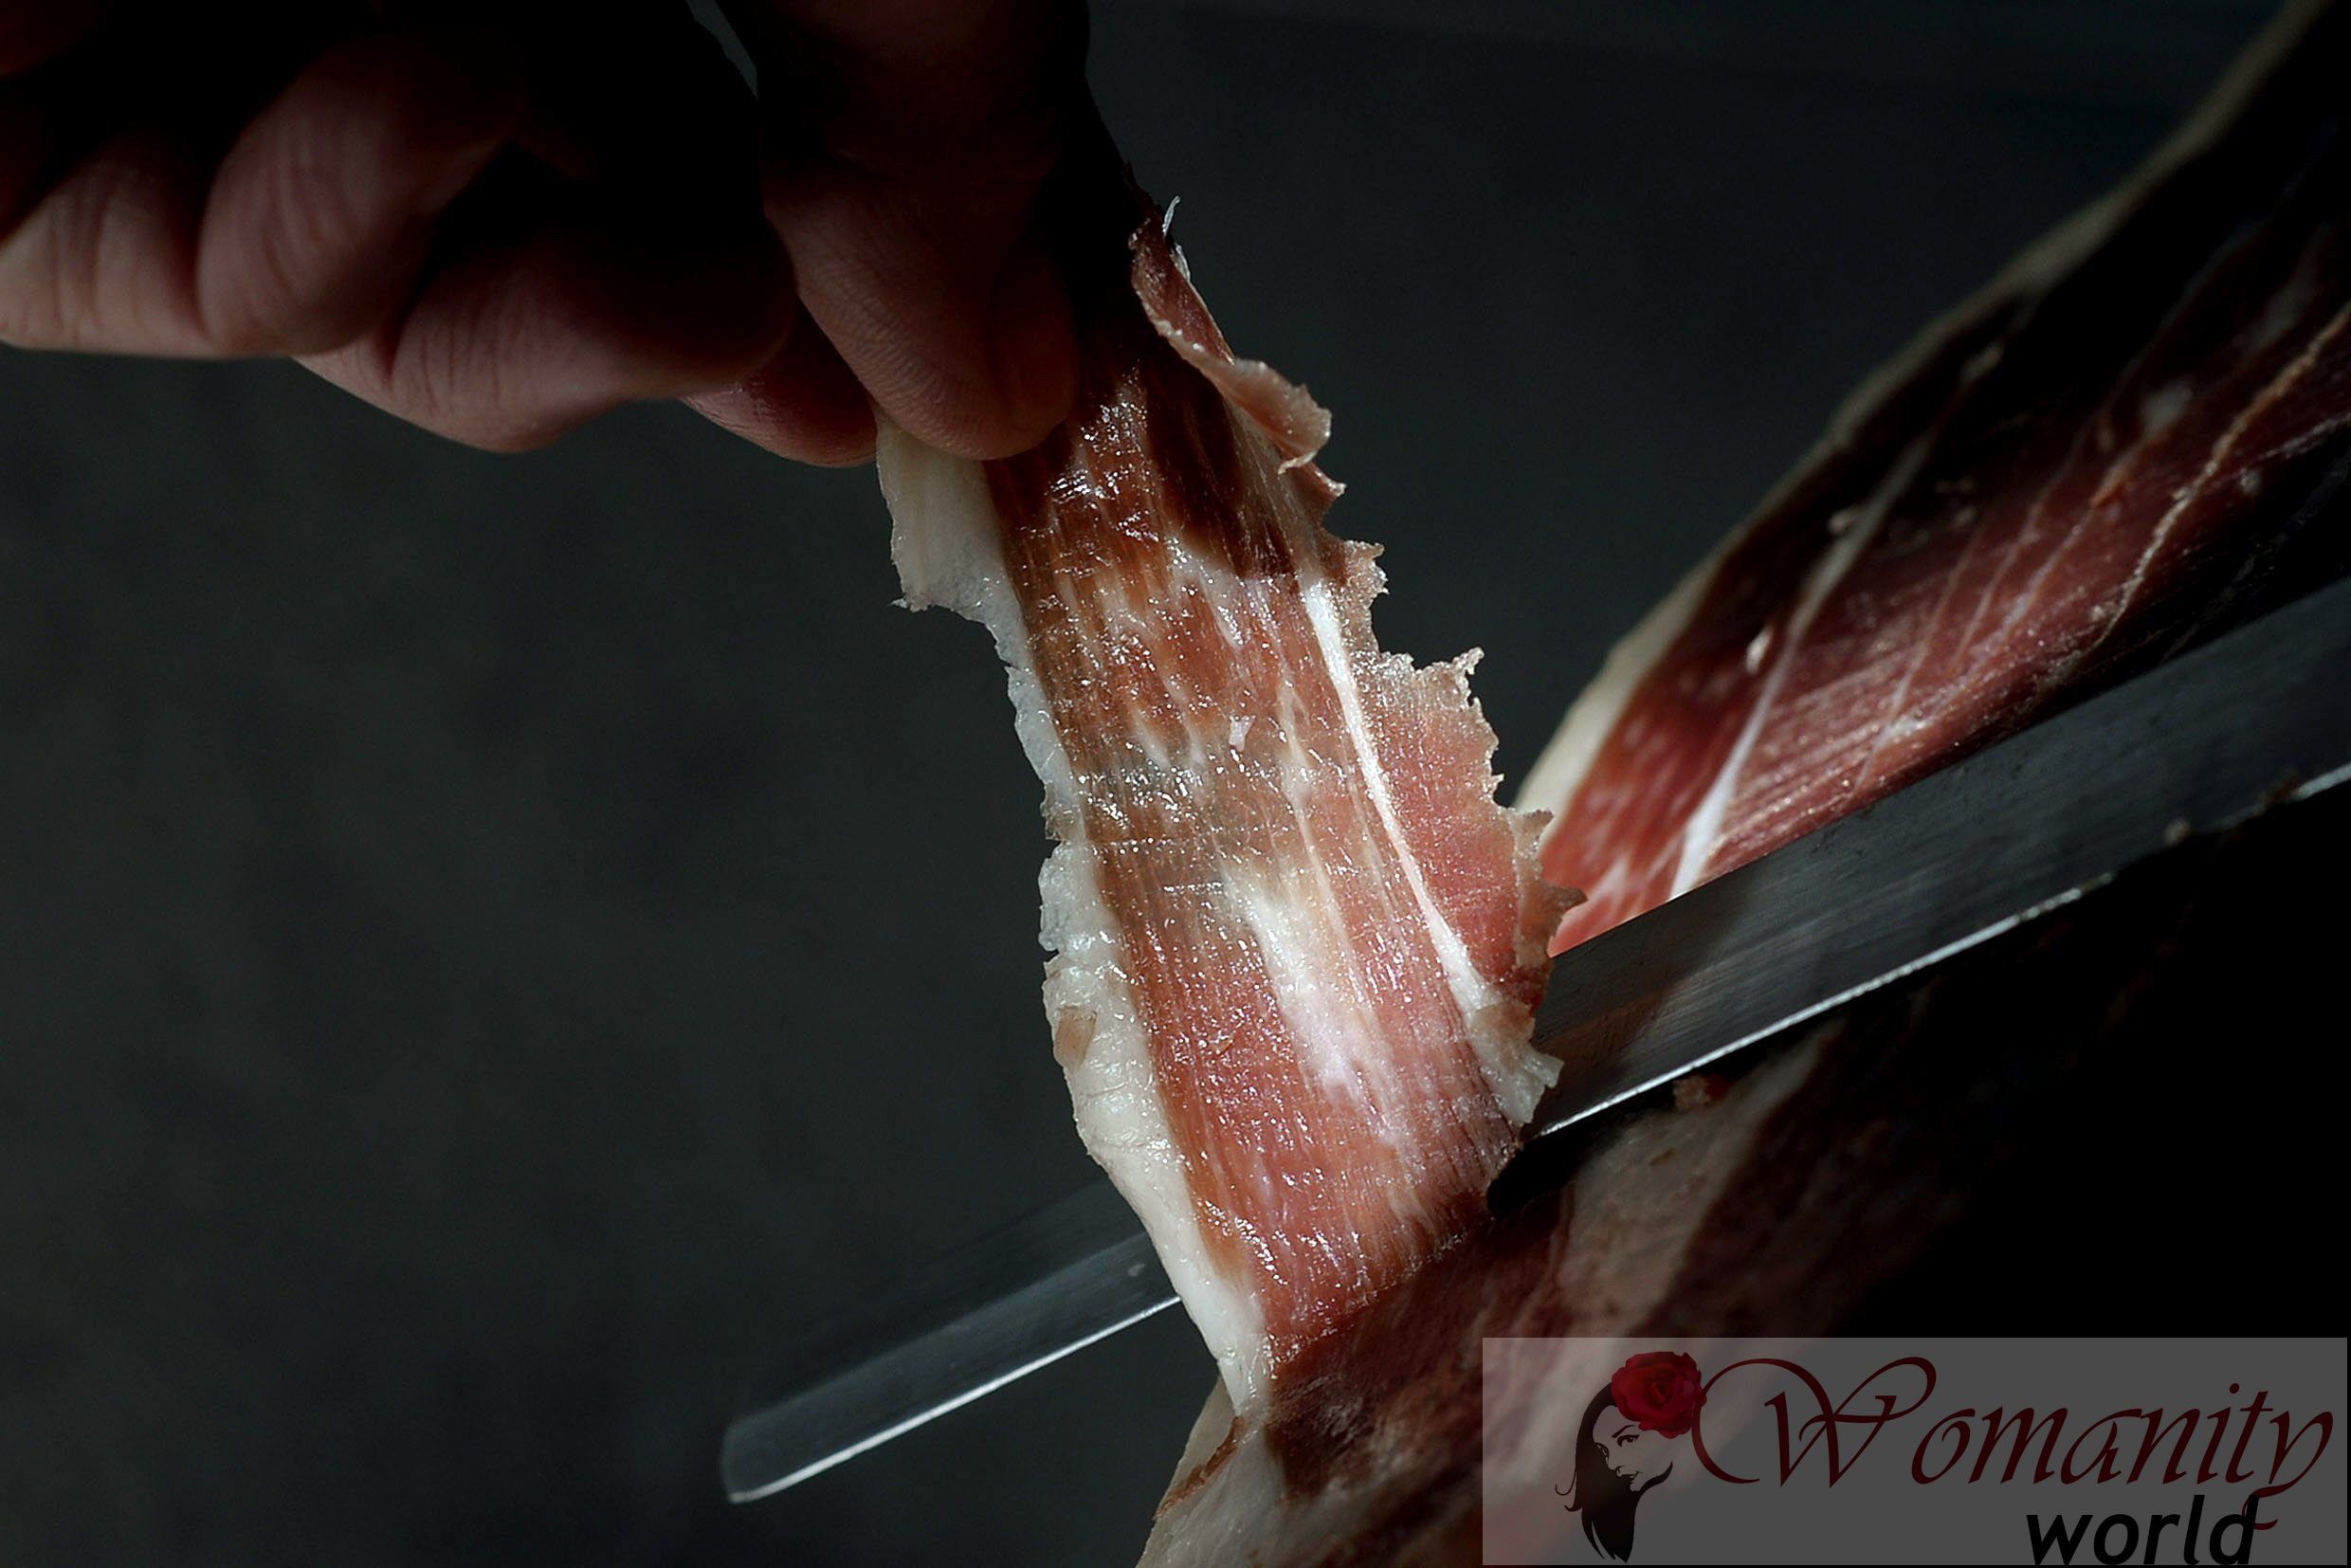 Iberische ham, goed voor de cardiovasculaire gezondheid en met 